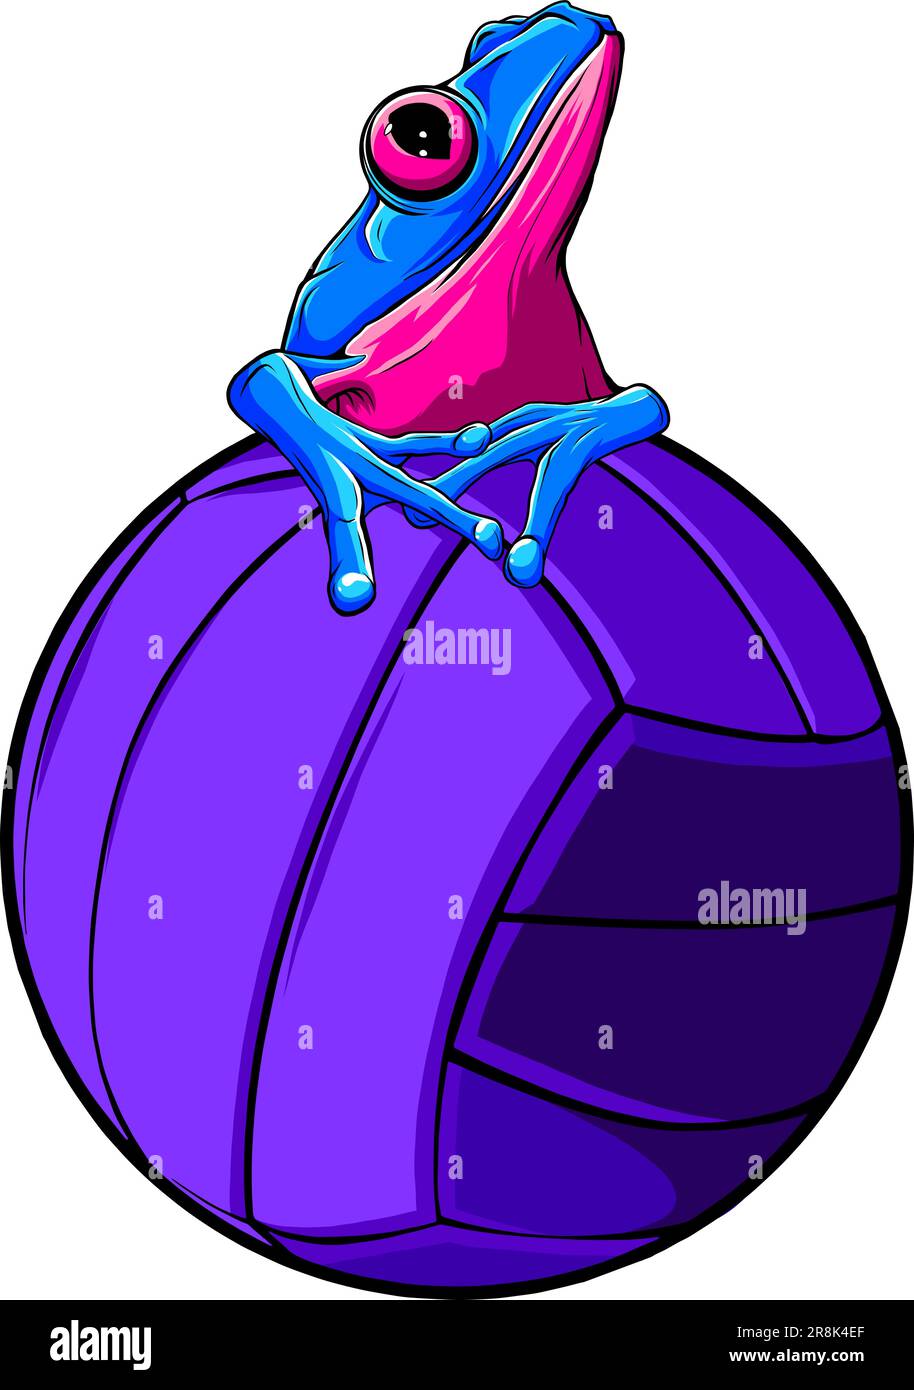 Ballon de volley avec motif vectoriel grenouille Illustration de Vecteur